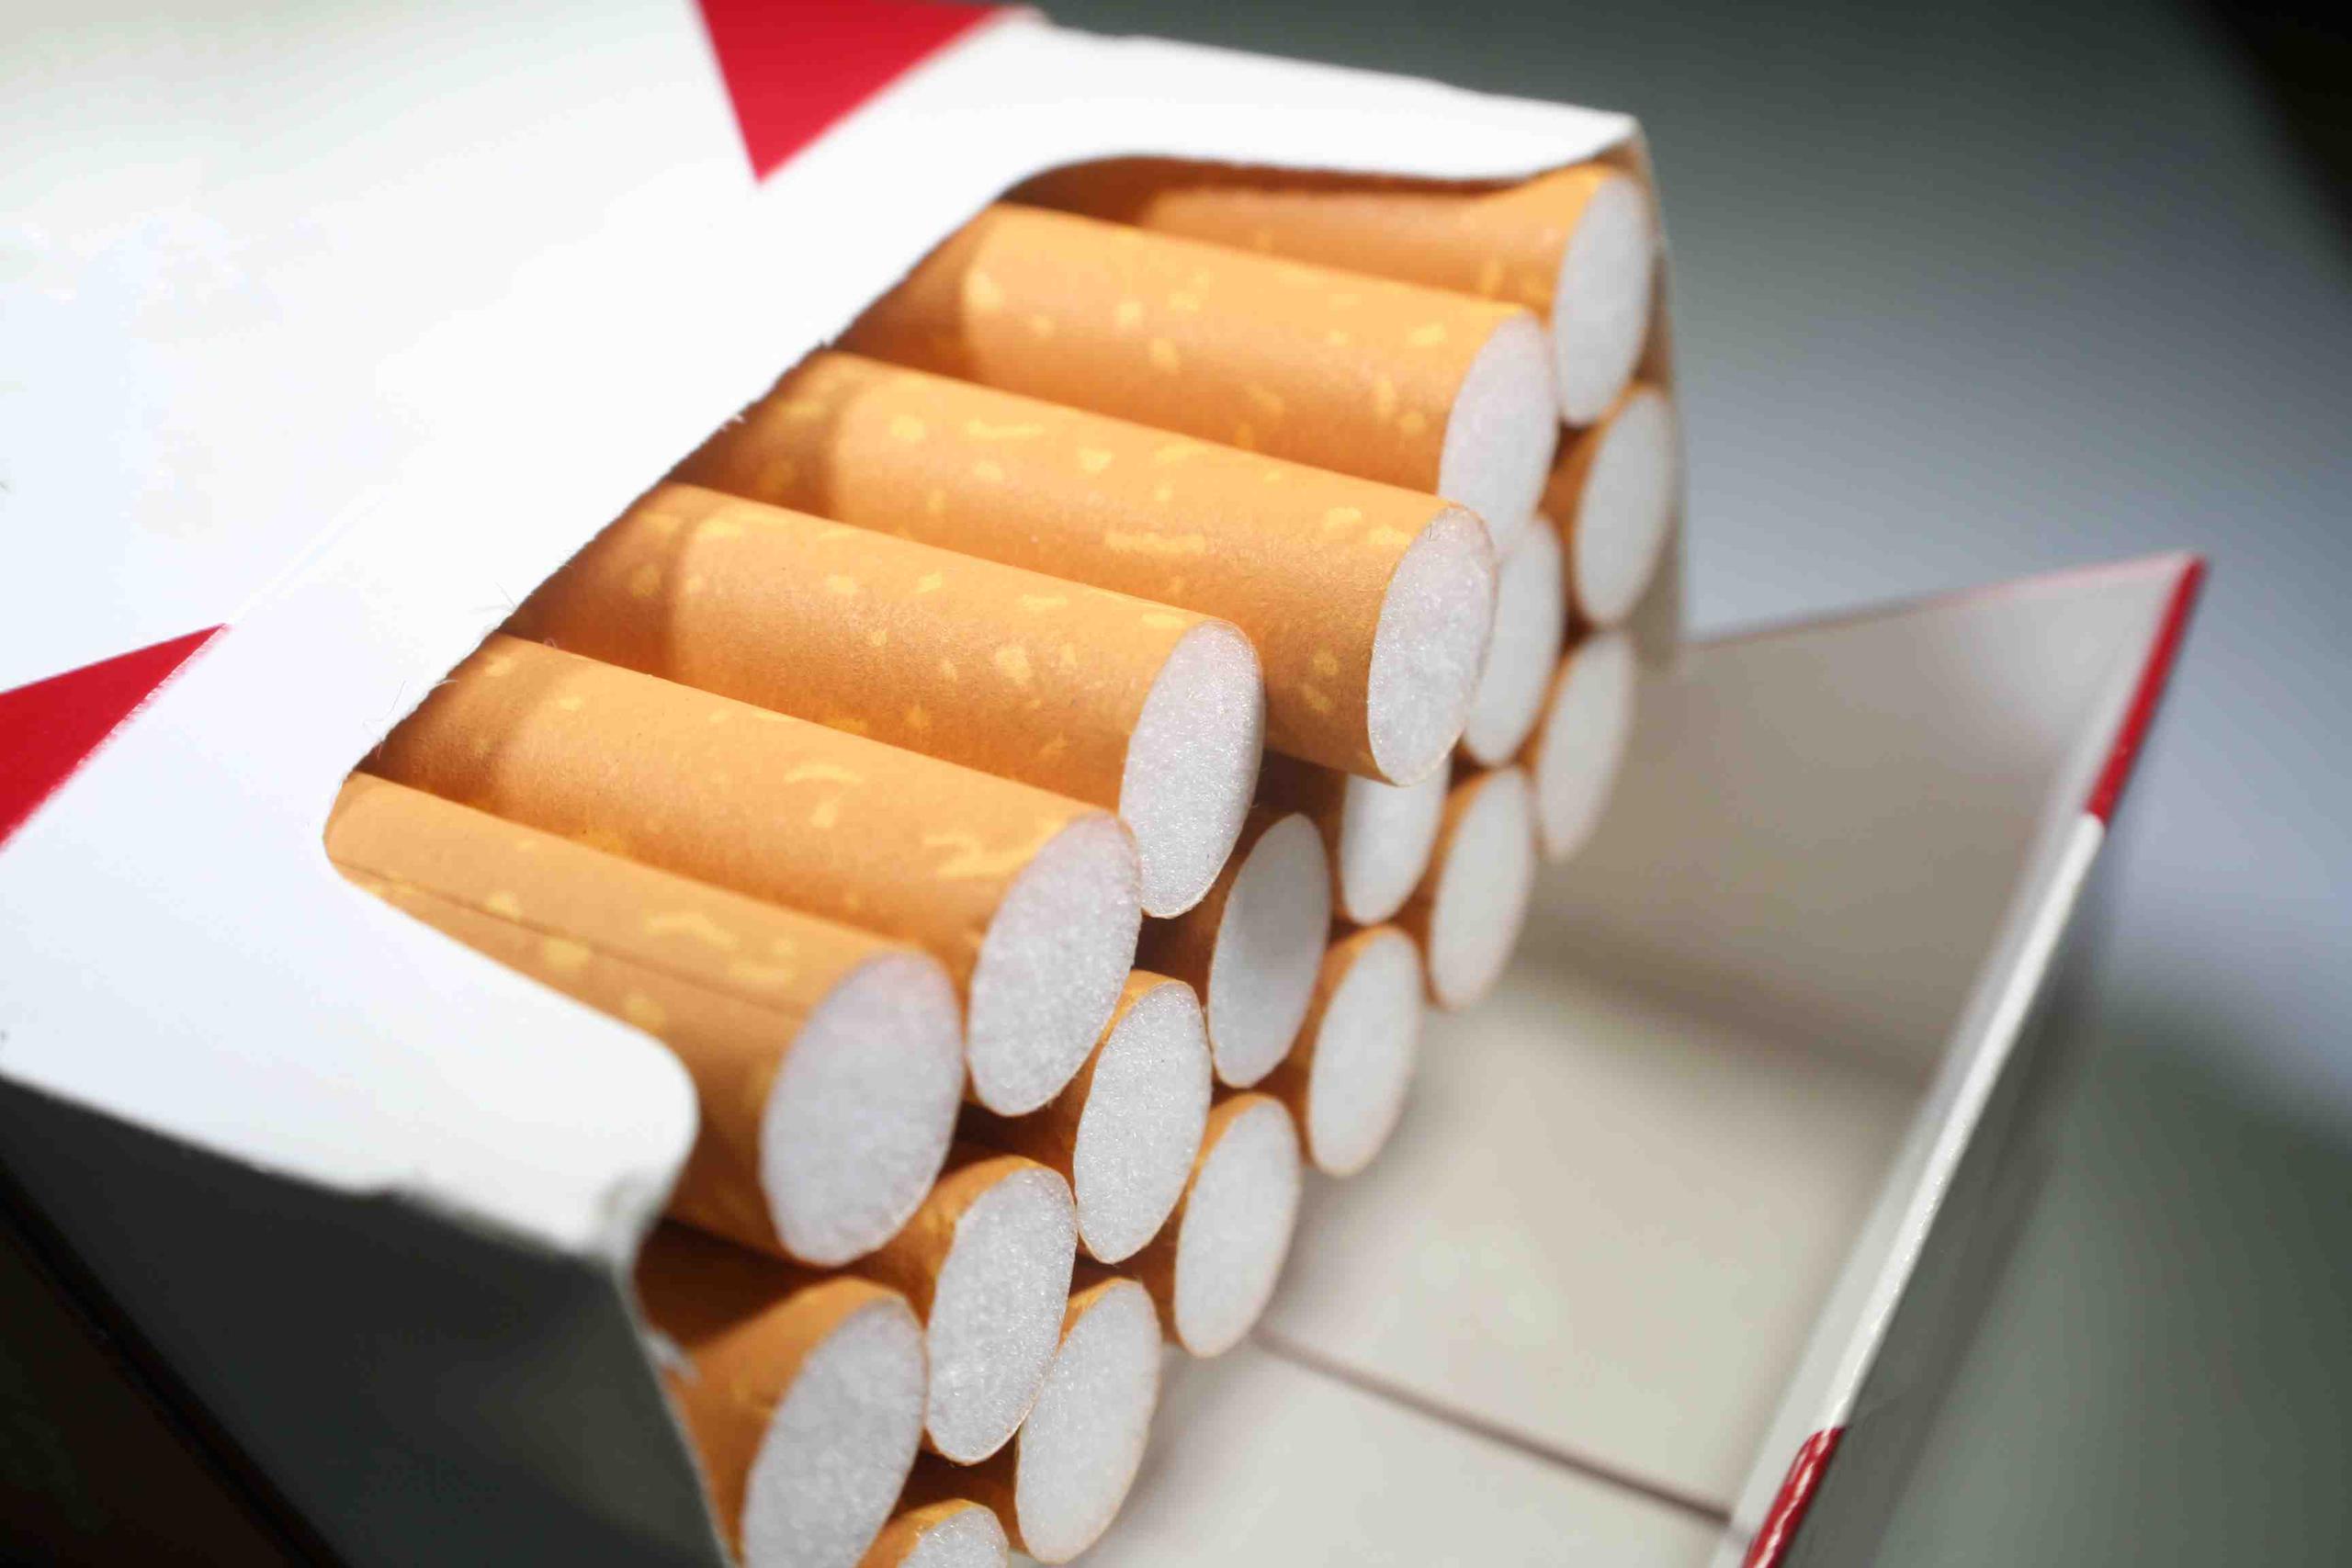 La policia dijo que se producían 3,500 cigarrillos por hora. (Shutterstock)